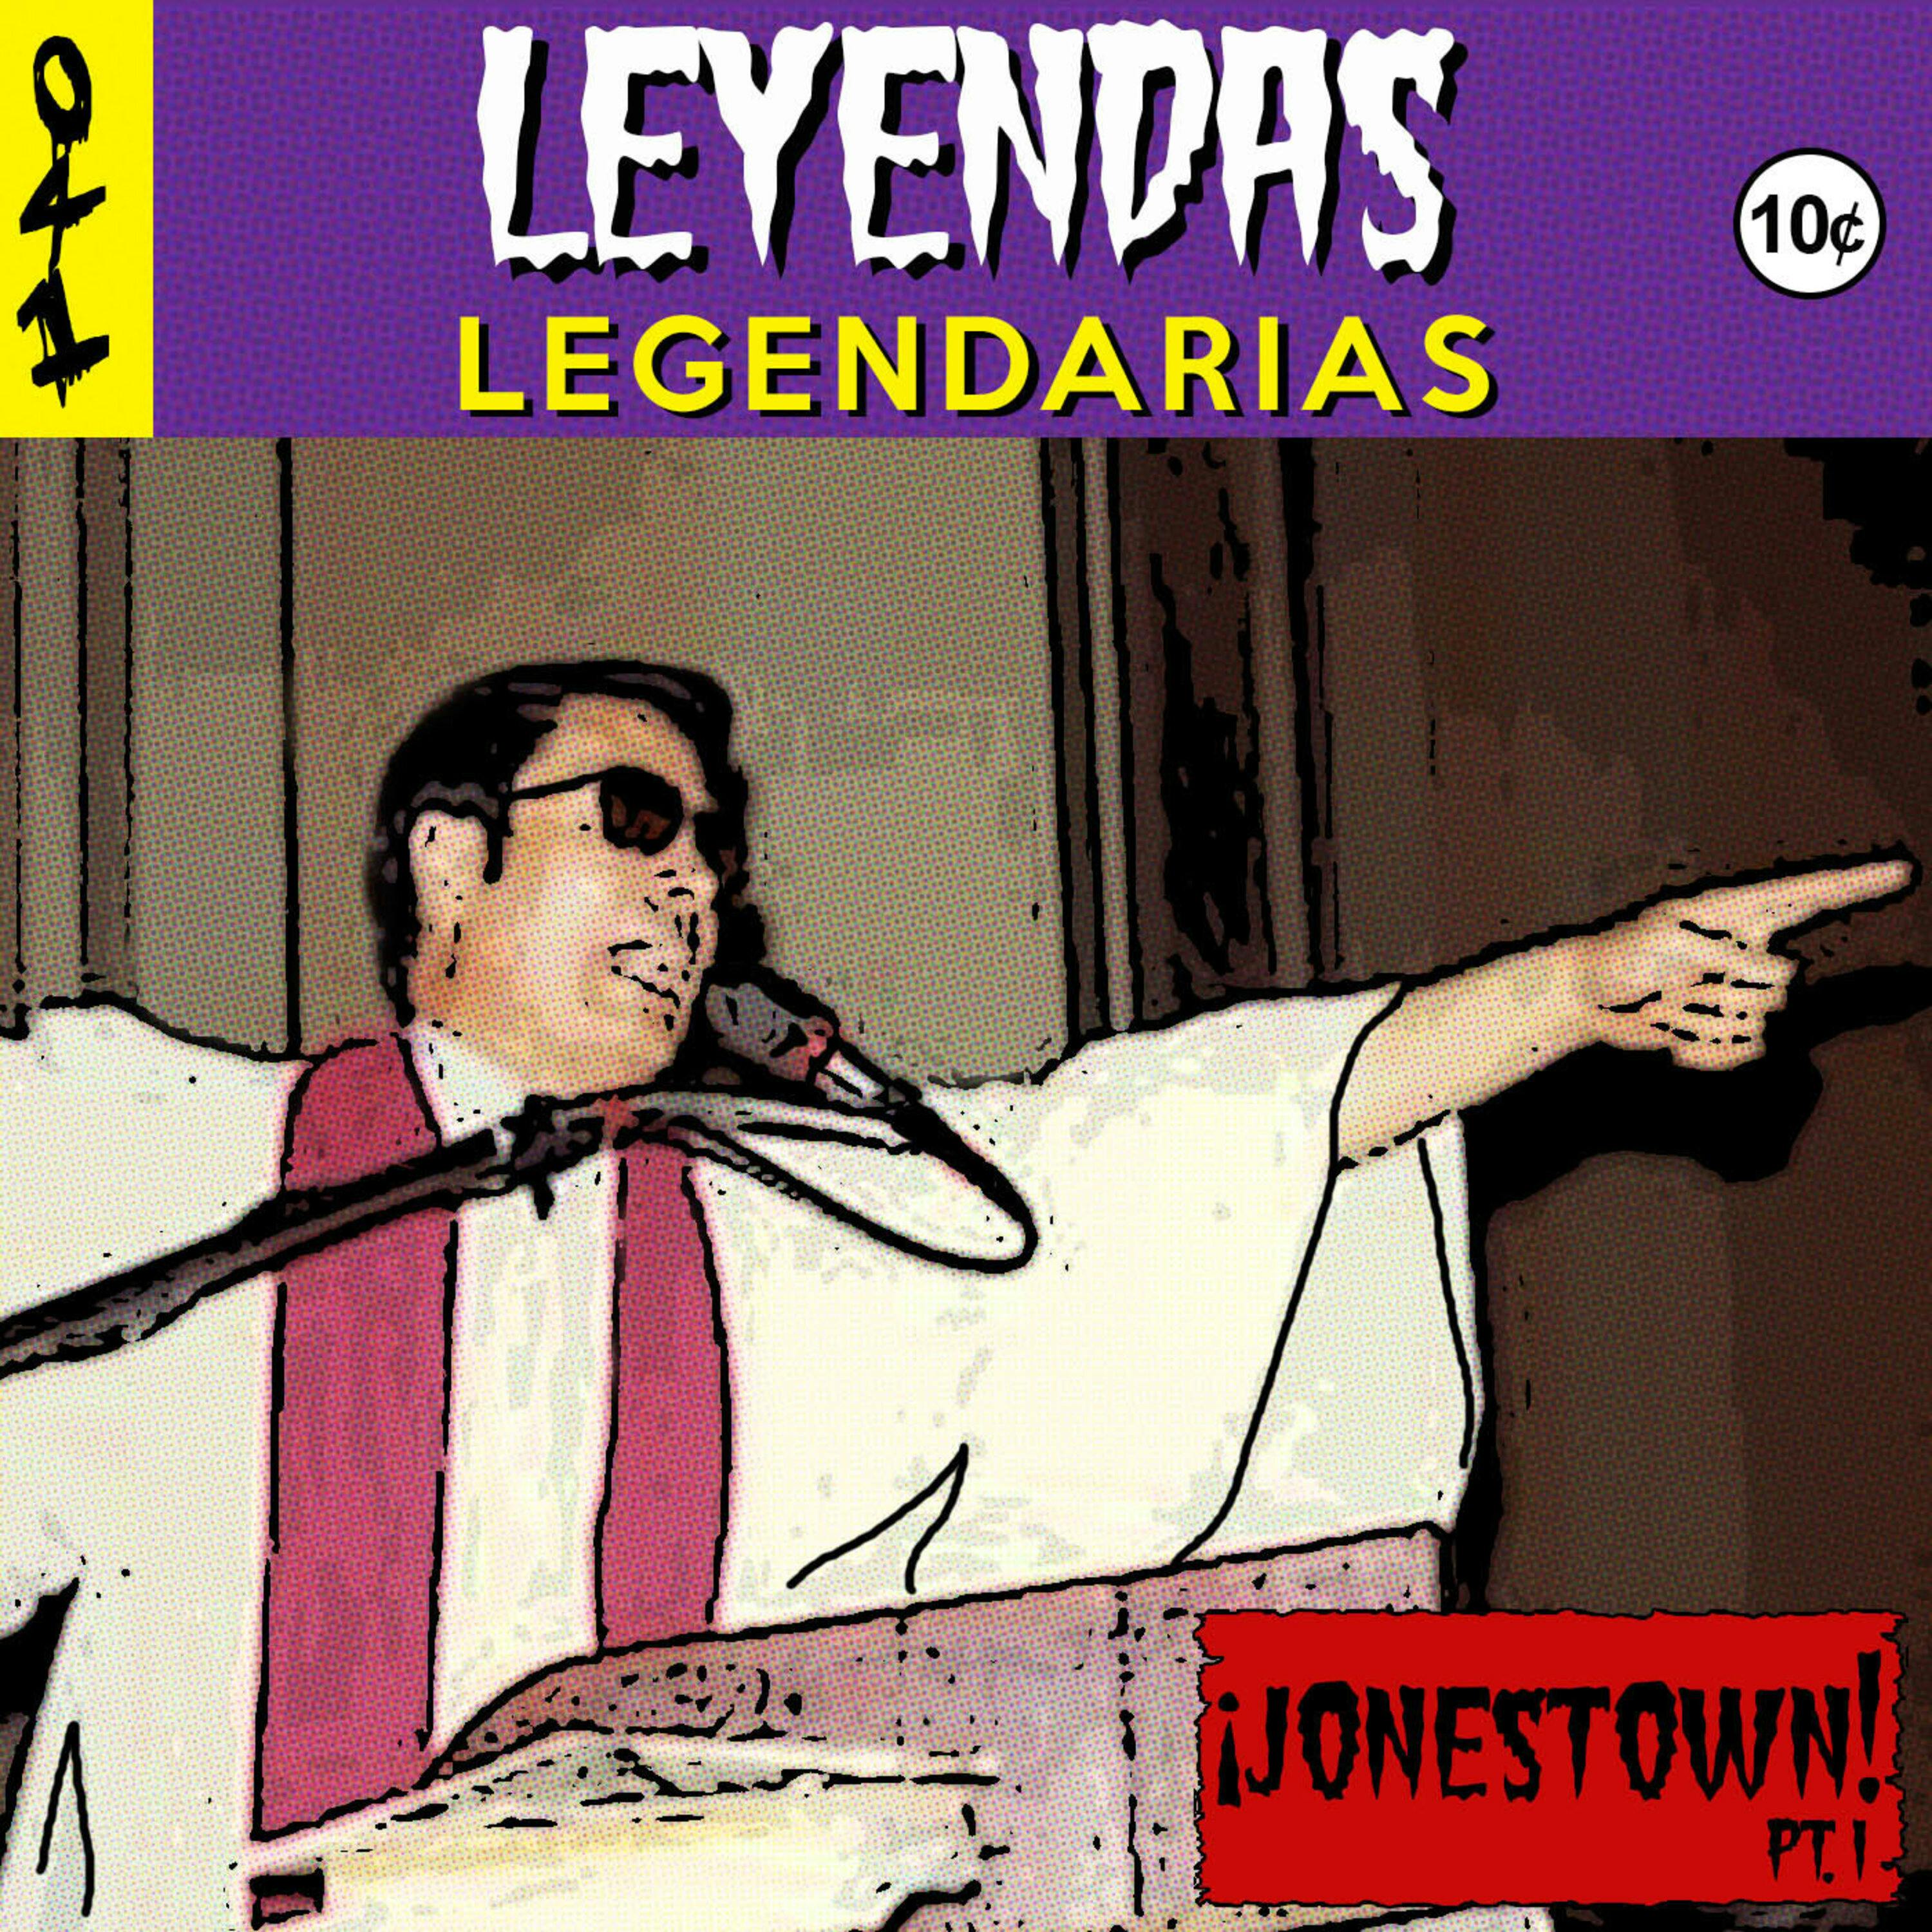 Leyendas Legendarias - Jack el Destripador es el seudónimo de un